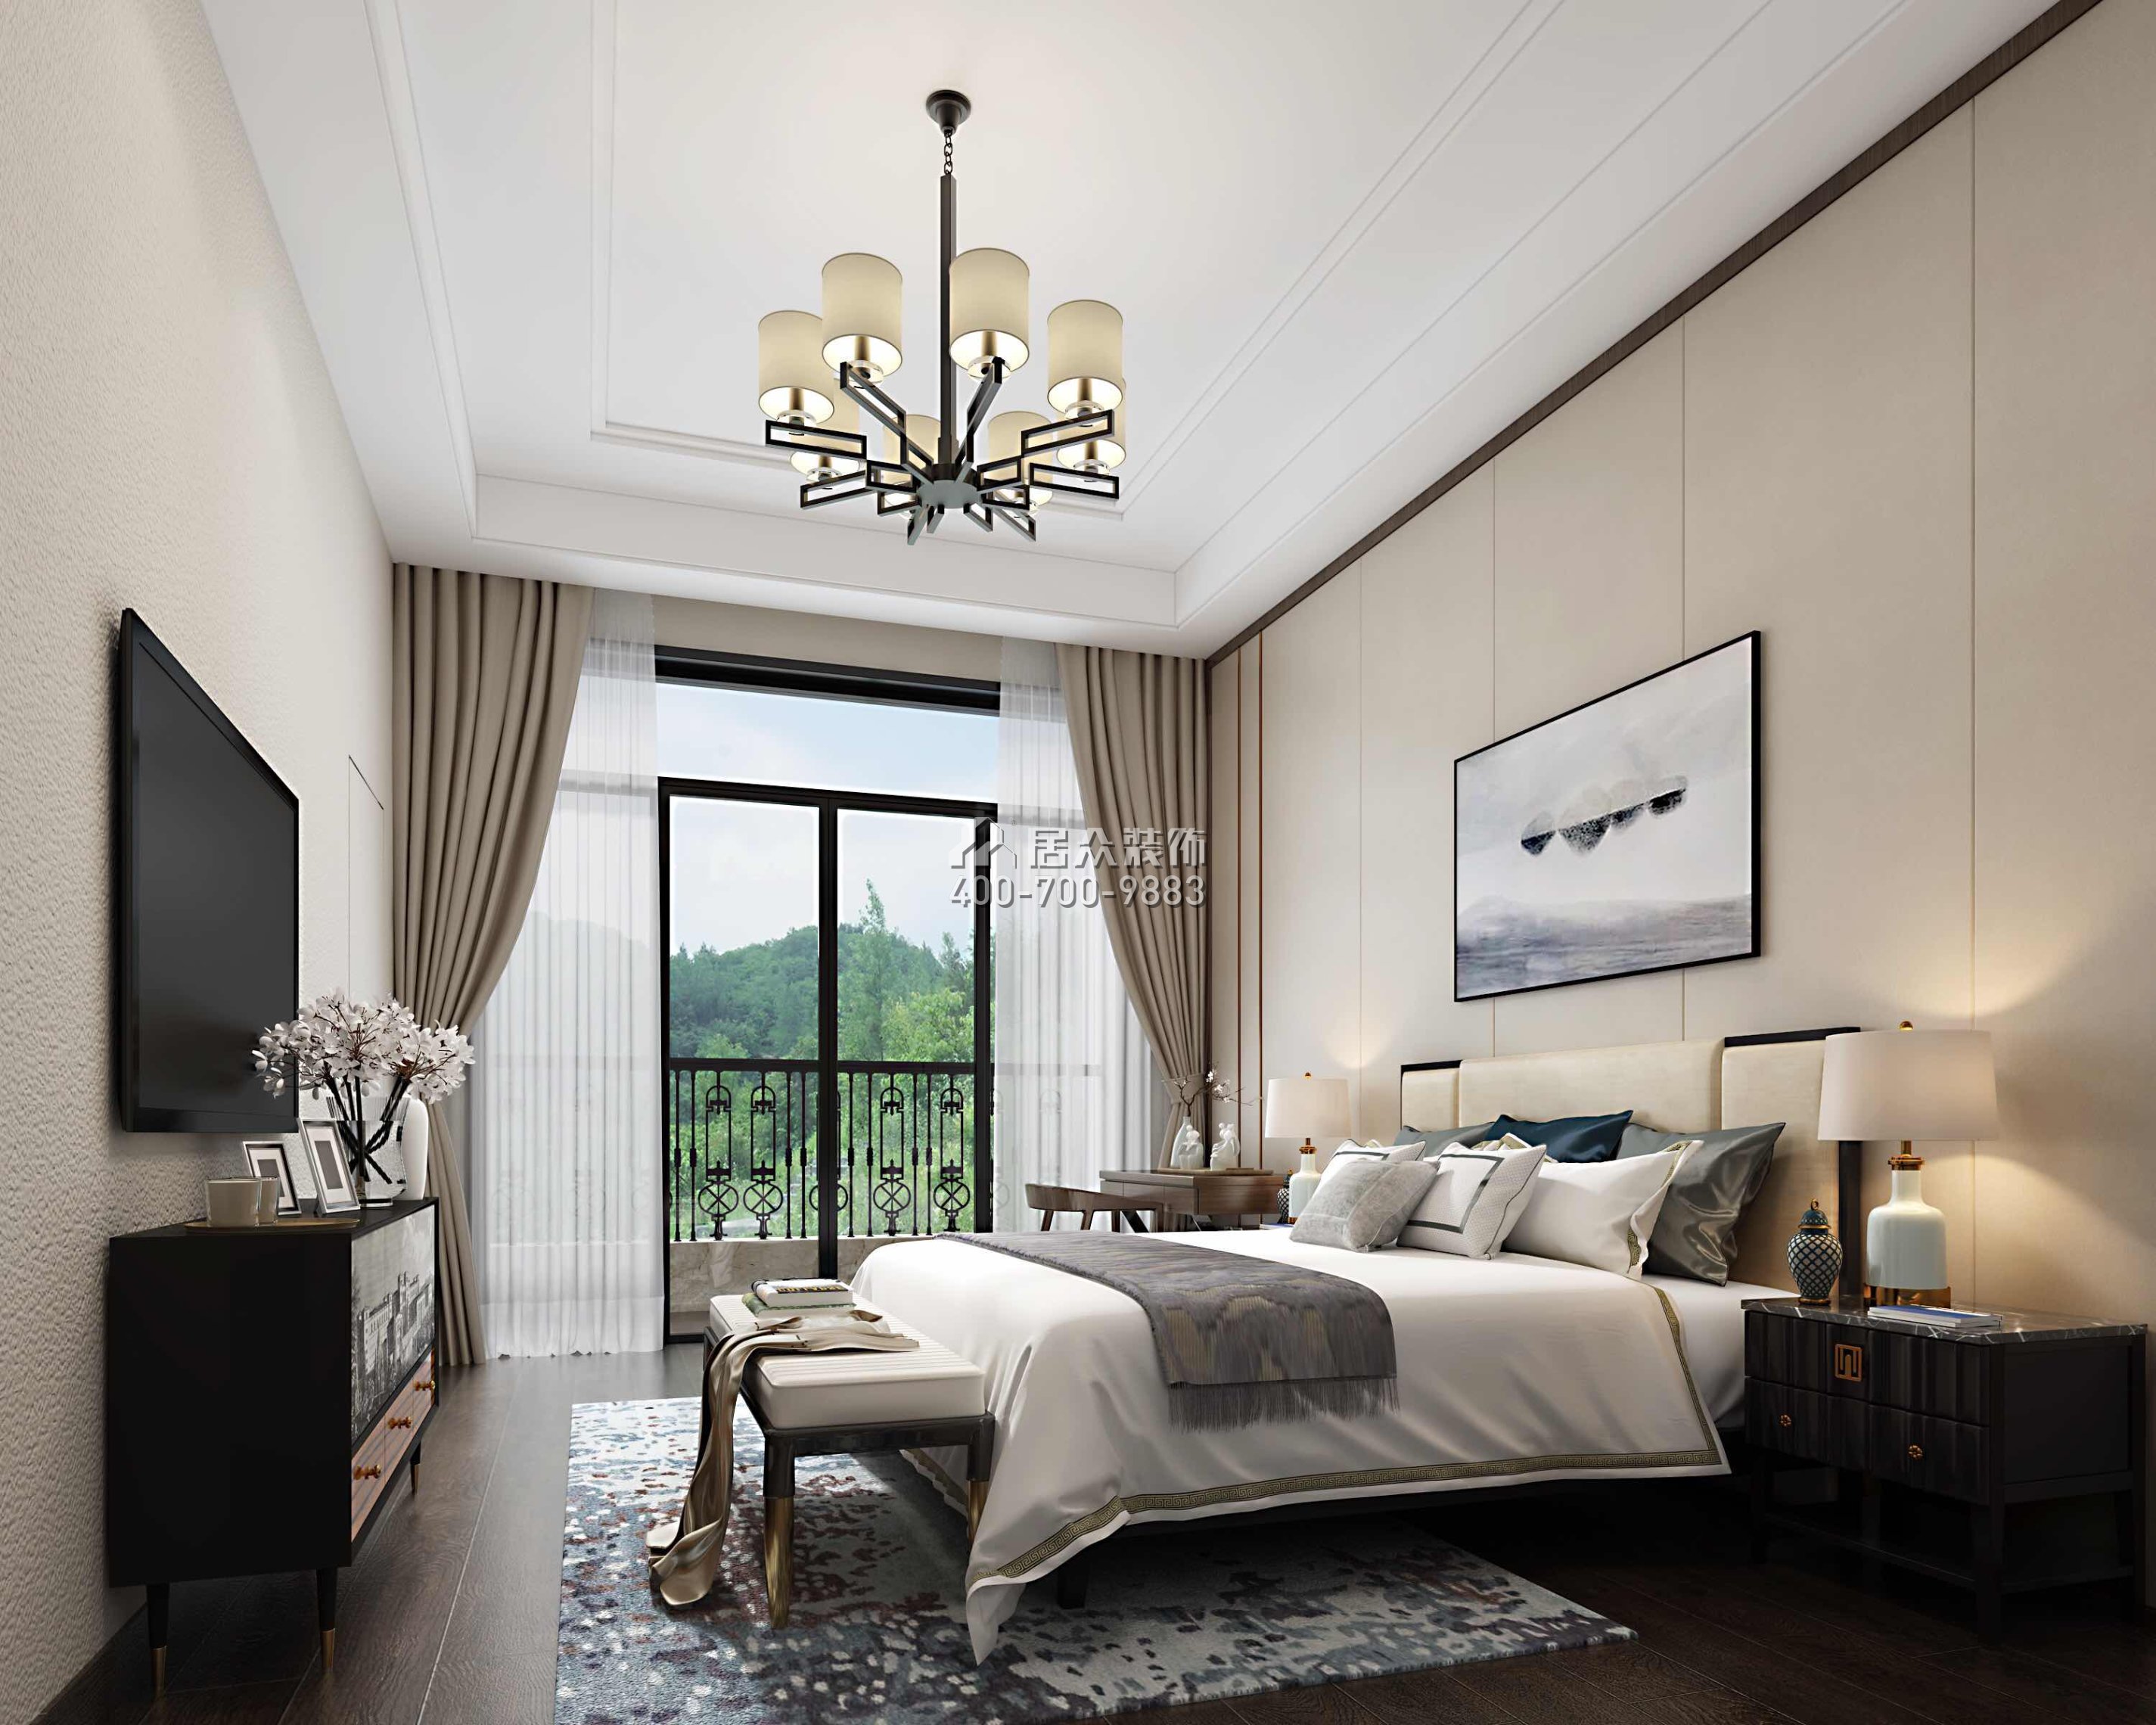 雅居乐白鹭湖300平方米中式风格平层户型卧室开元官网效果图